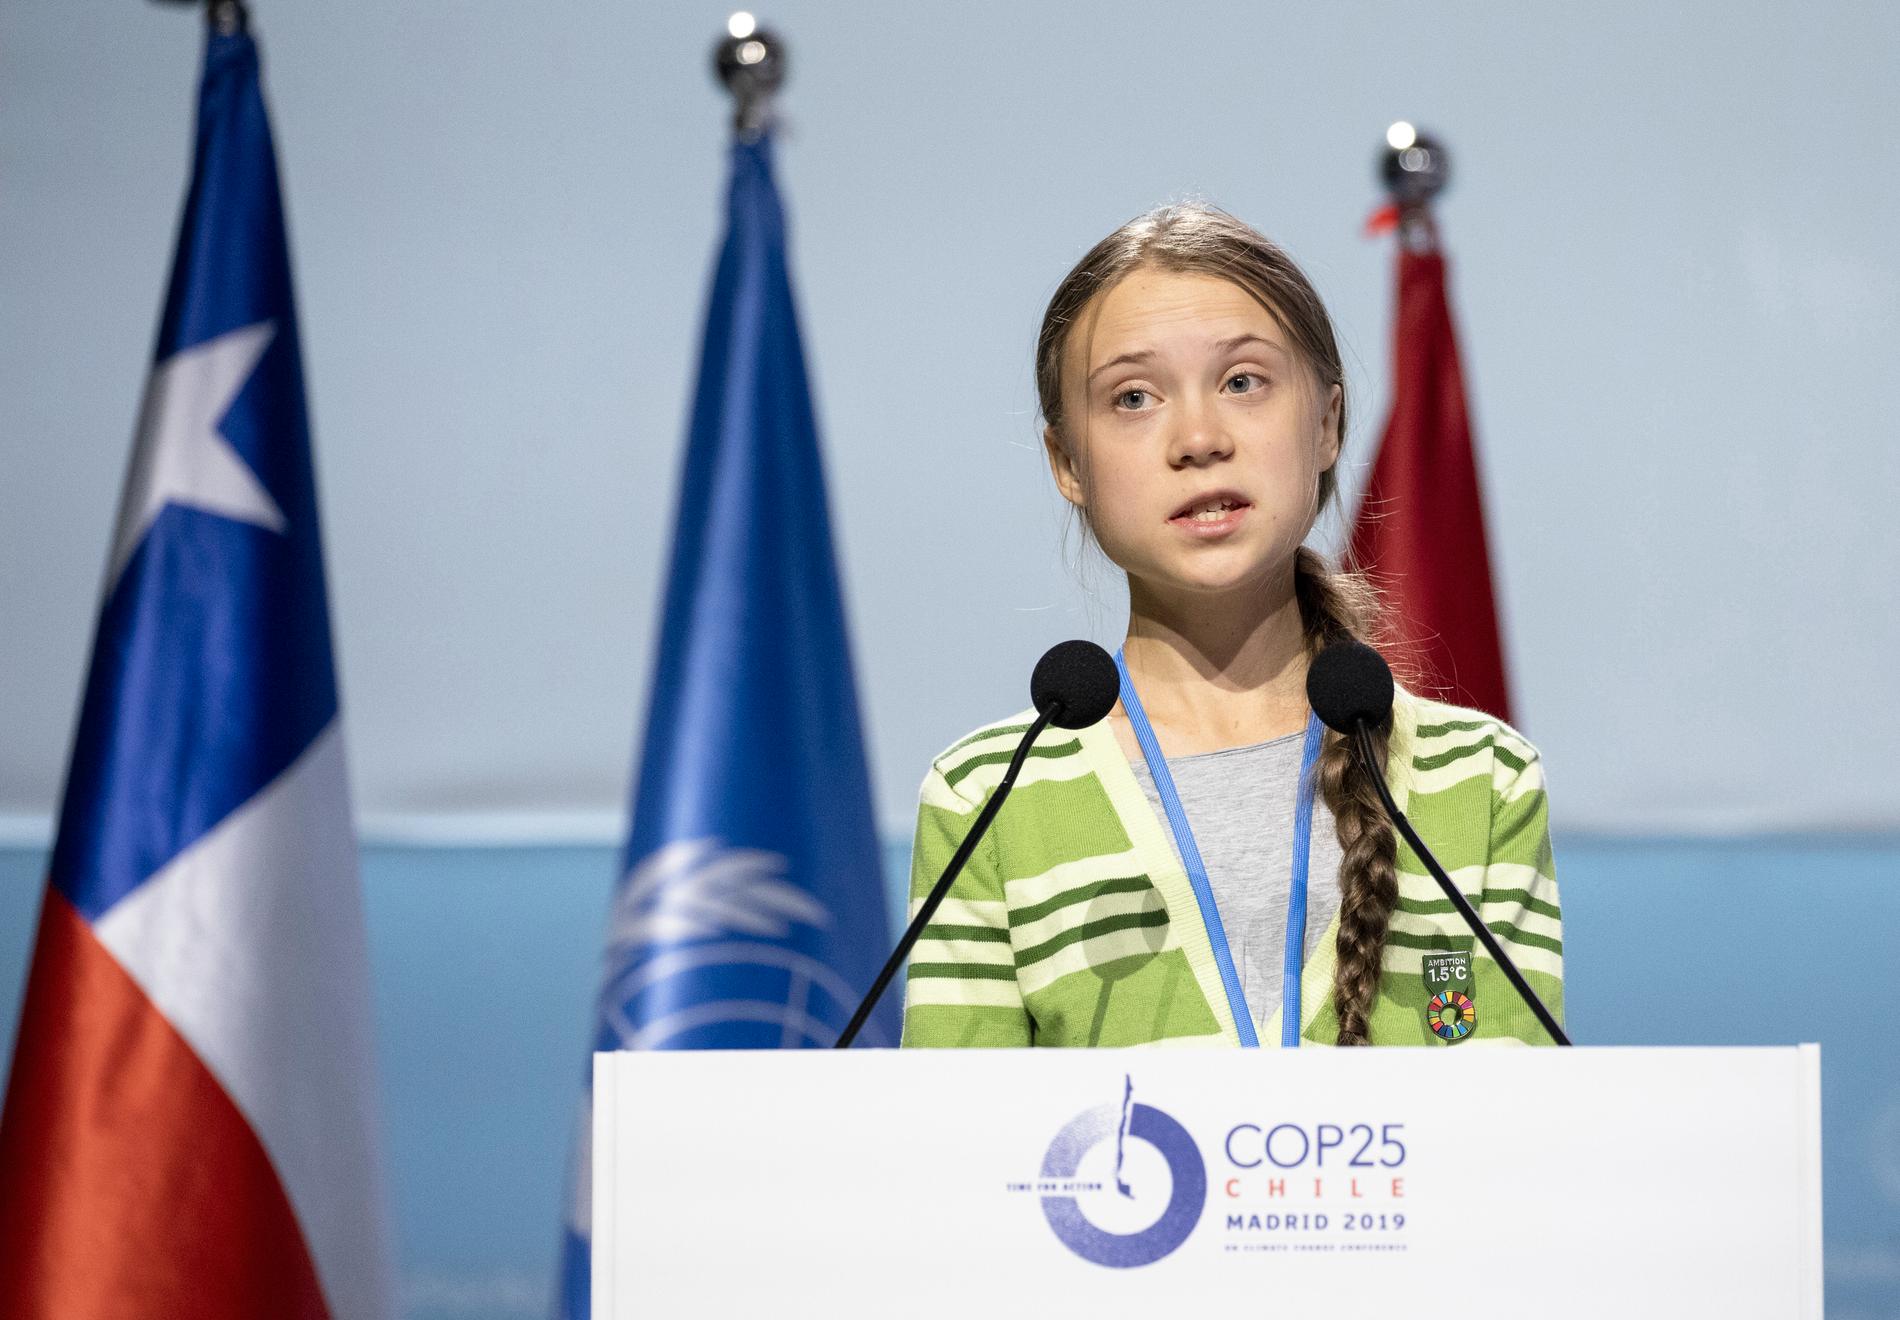 Svaret var förstås Greta Thunberg, som här syns på bild under ett tal på FN:s klimatmöte i Madrid.